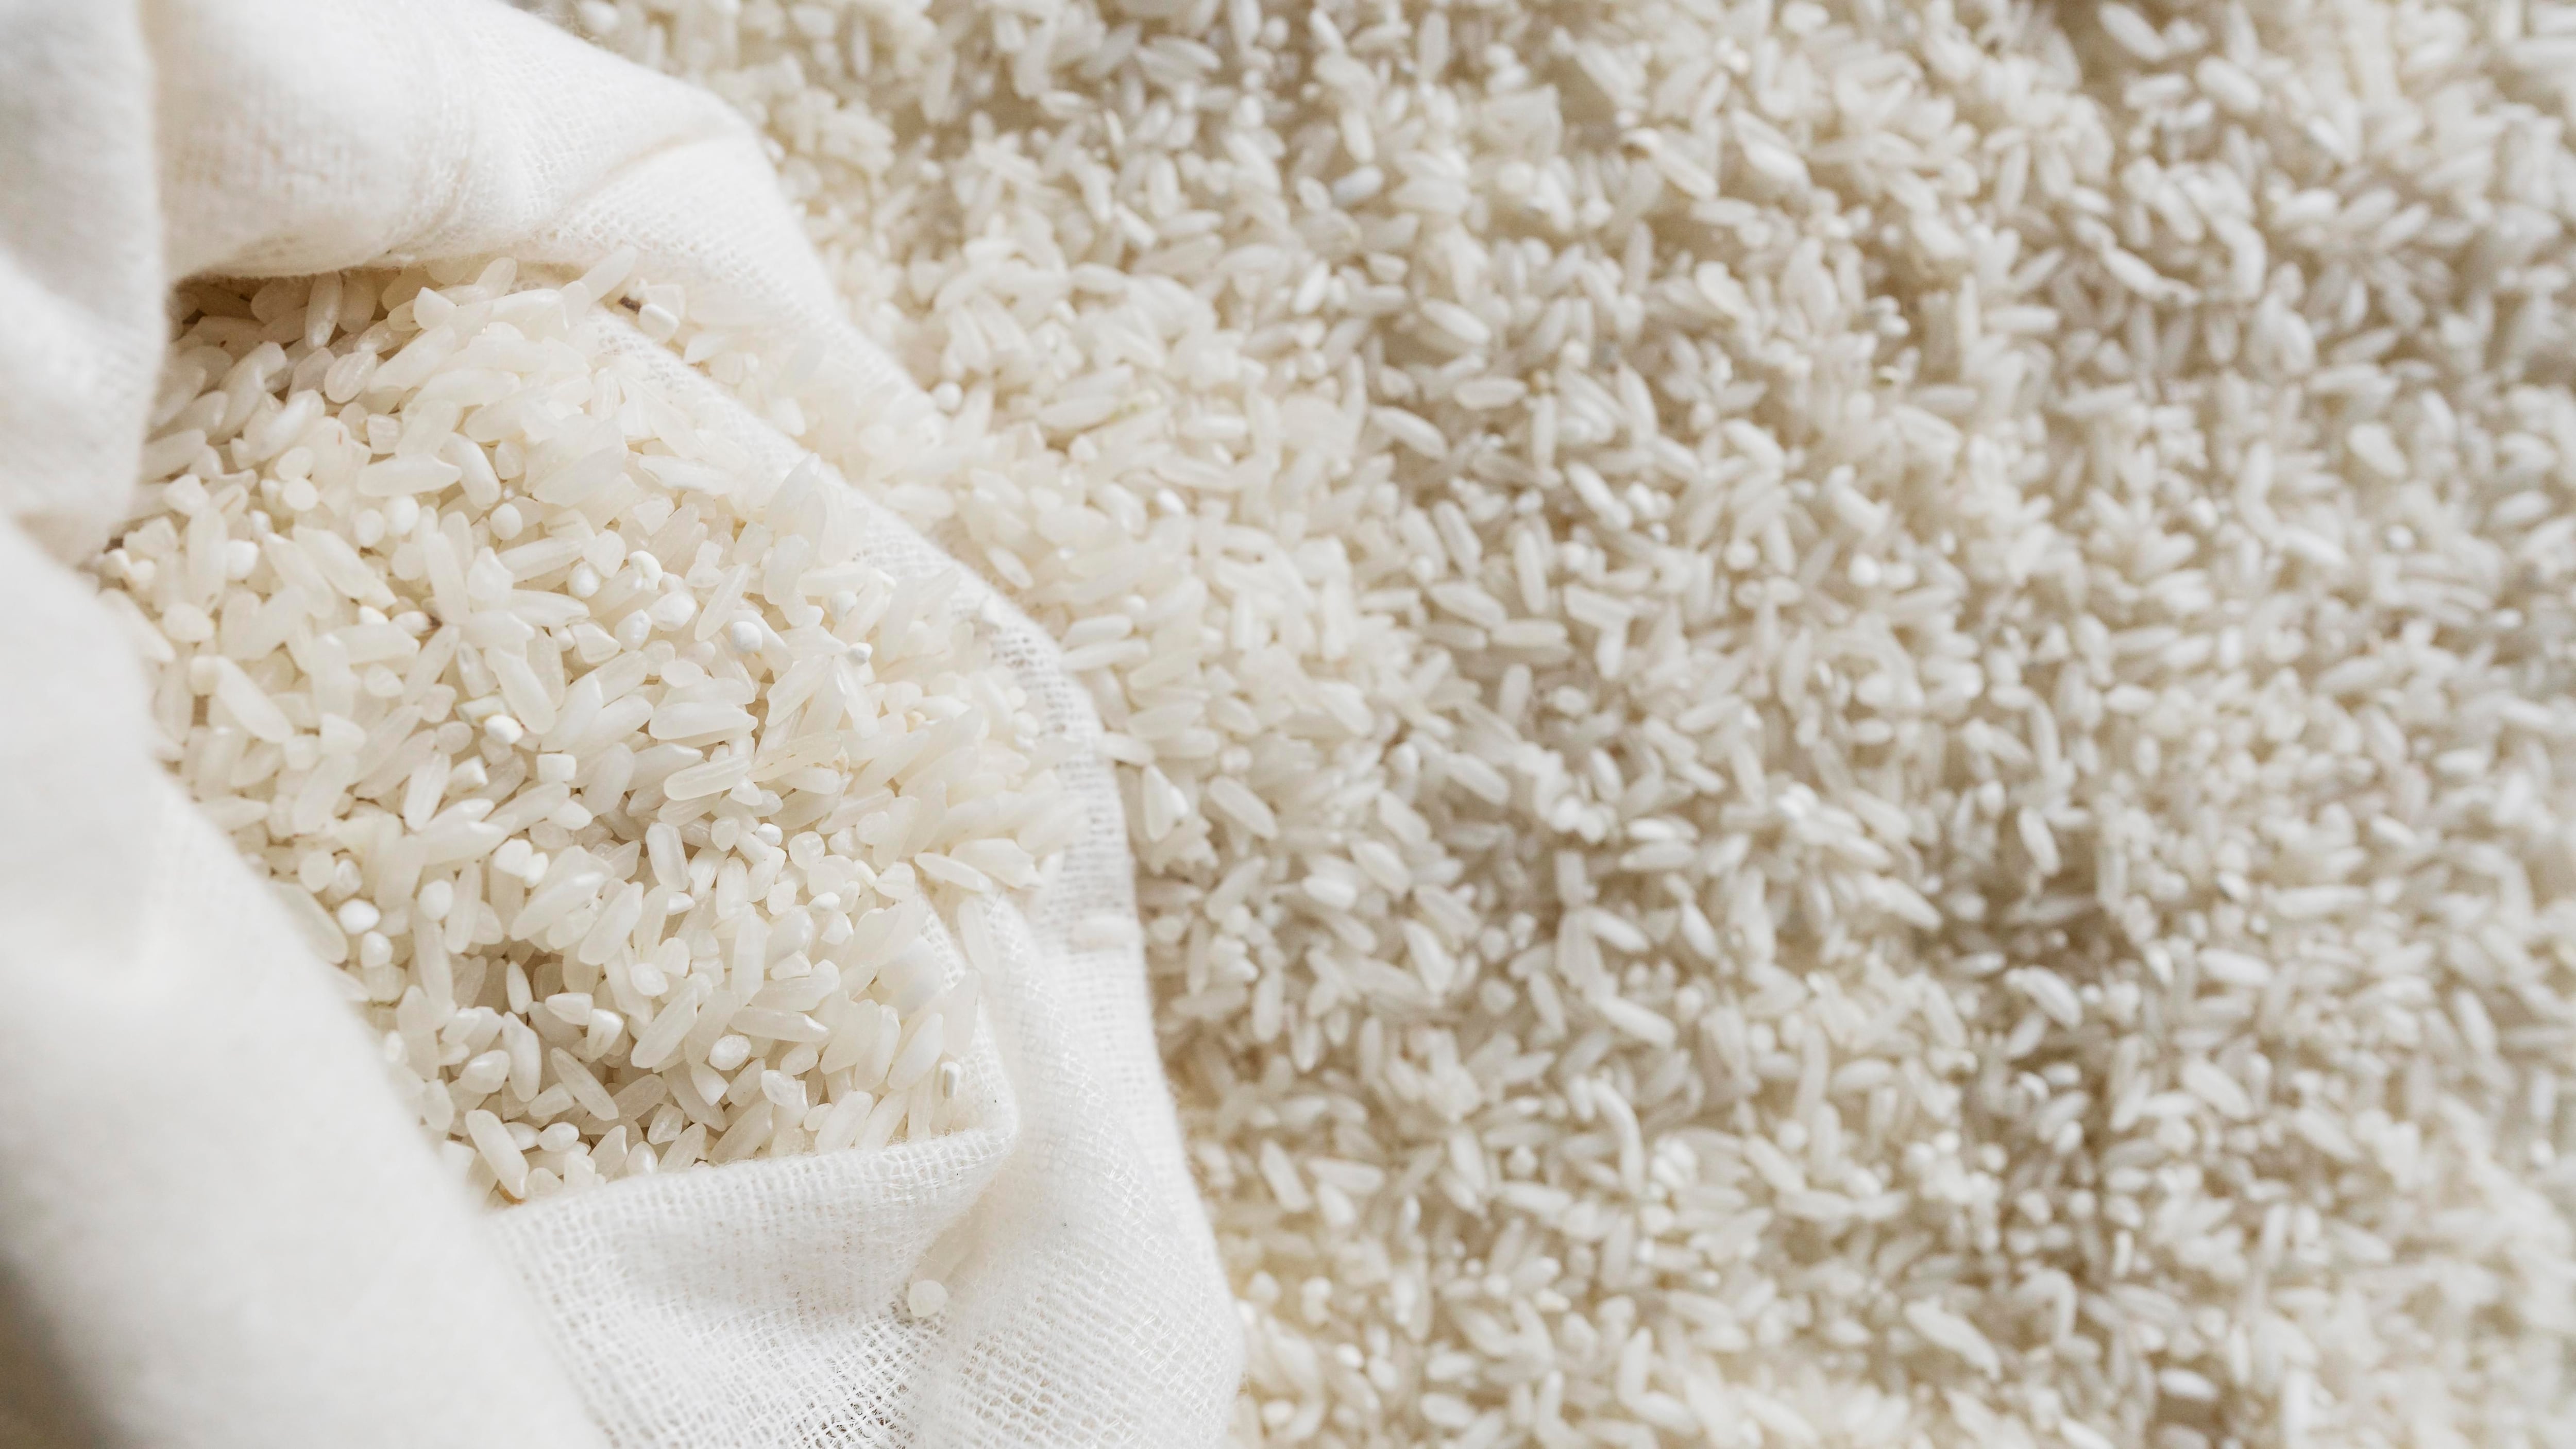 El arroz es un portador de antioxidantes y minerales que pueden fortalecer la salud
Foto: Freepik